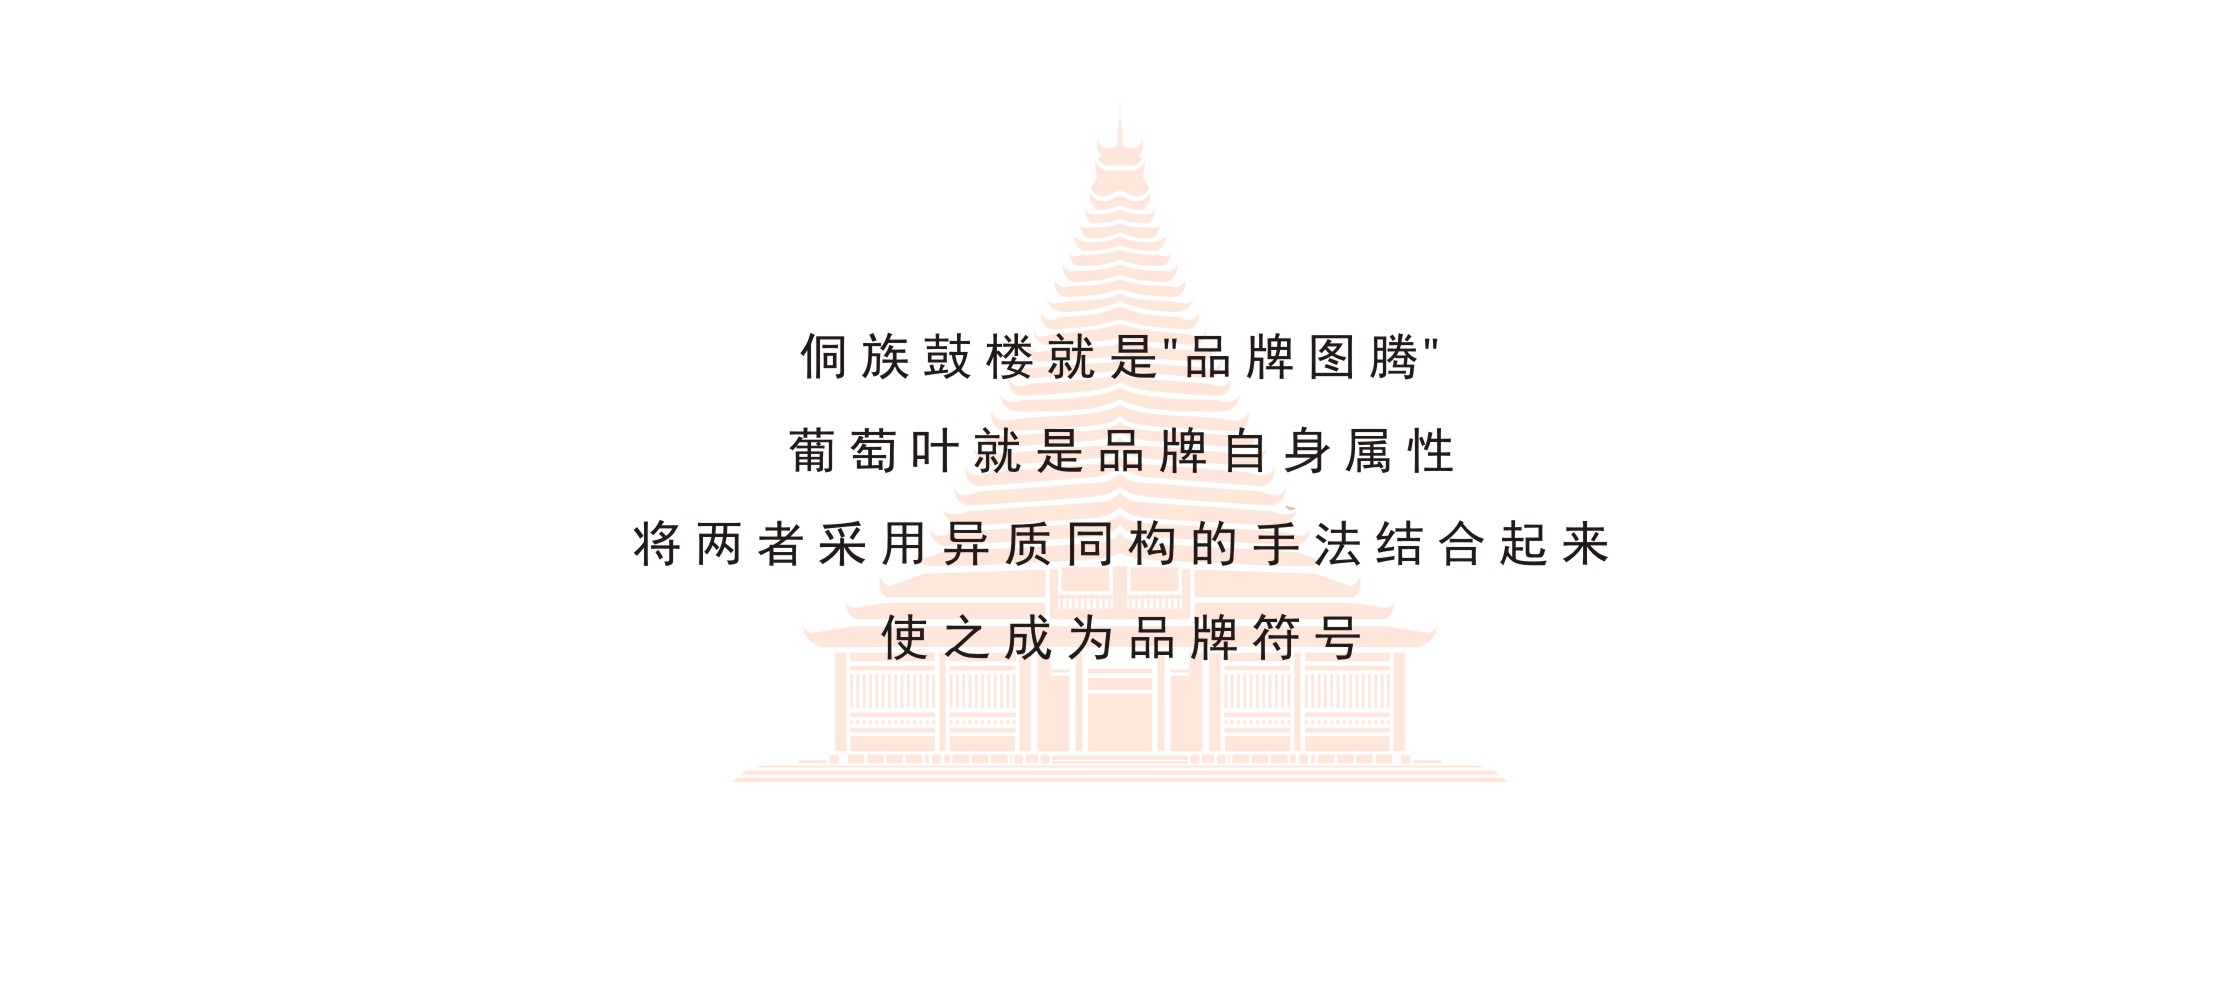 侗族鼓楼logo图片